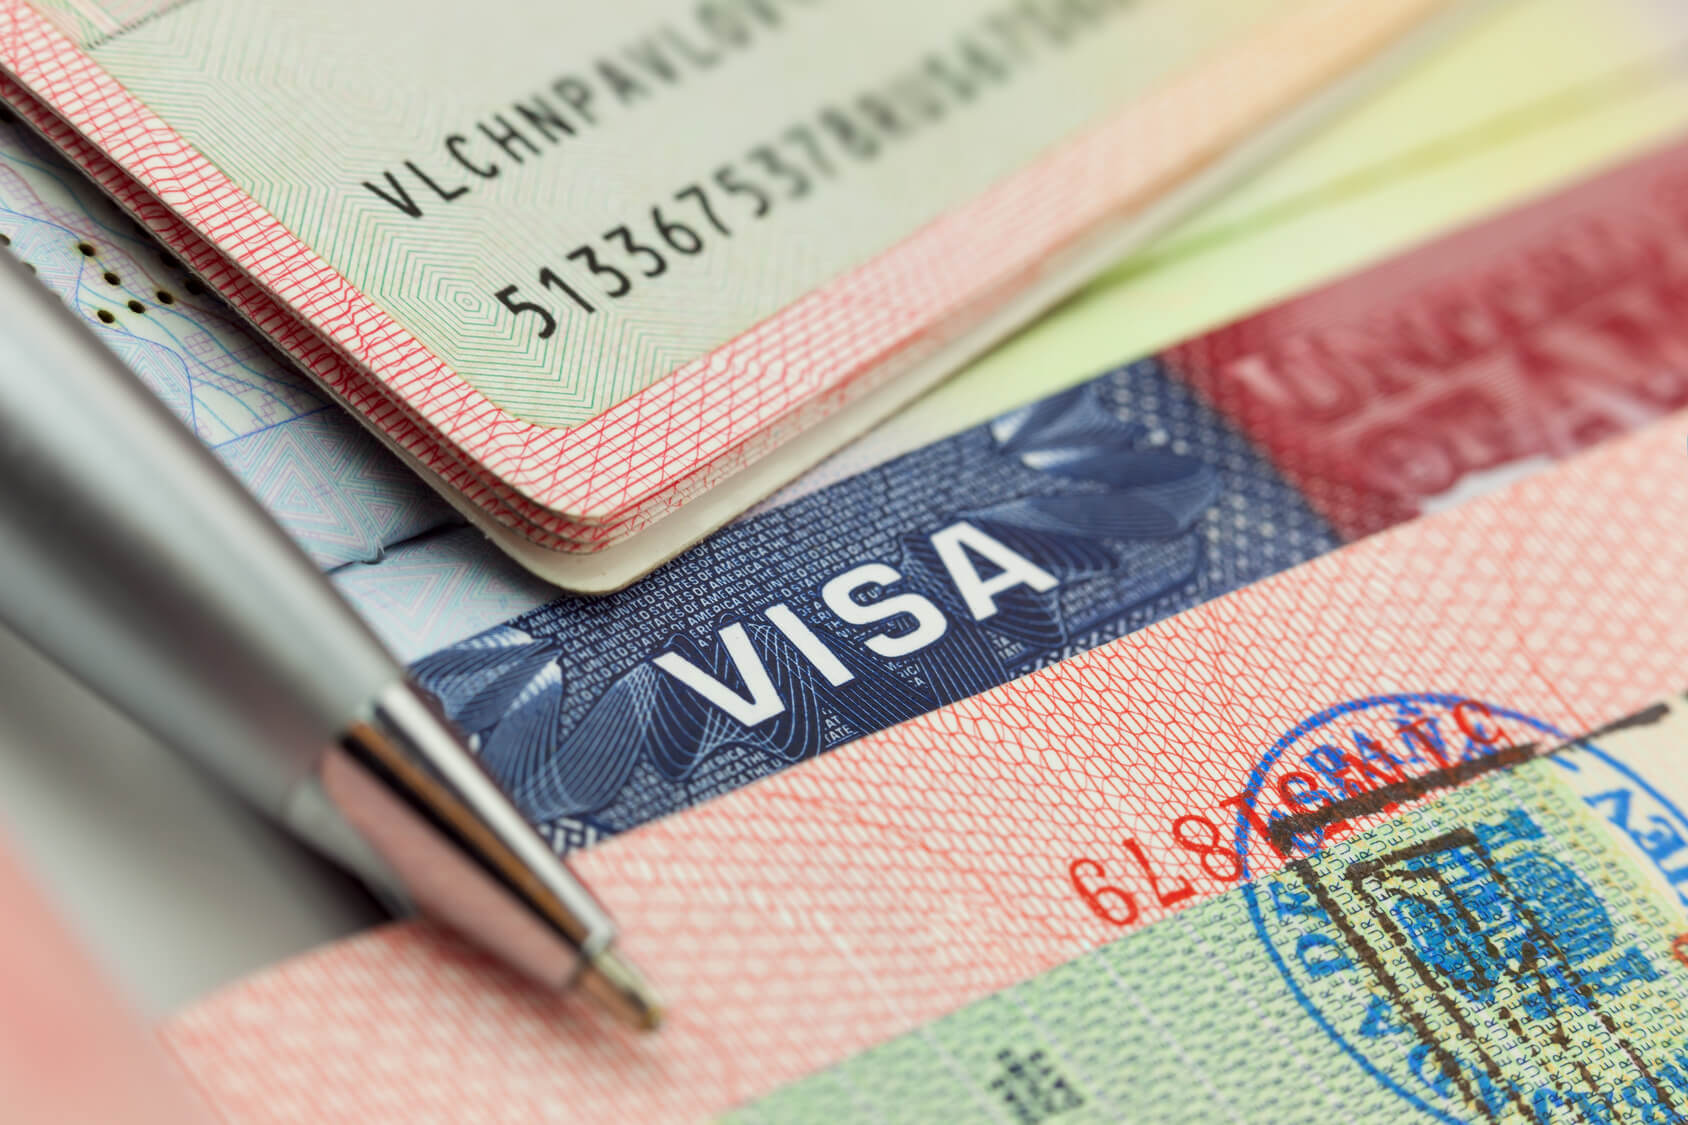 Thời gian xử lý hồ sơ visa du học Trung Quốc chỉ mất khoảng 4 ngày